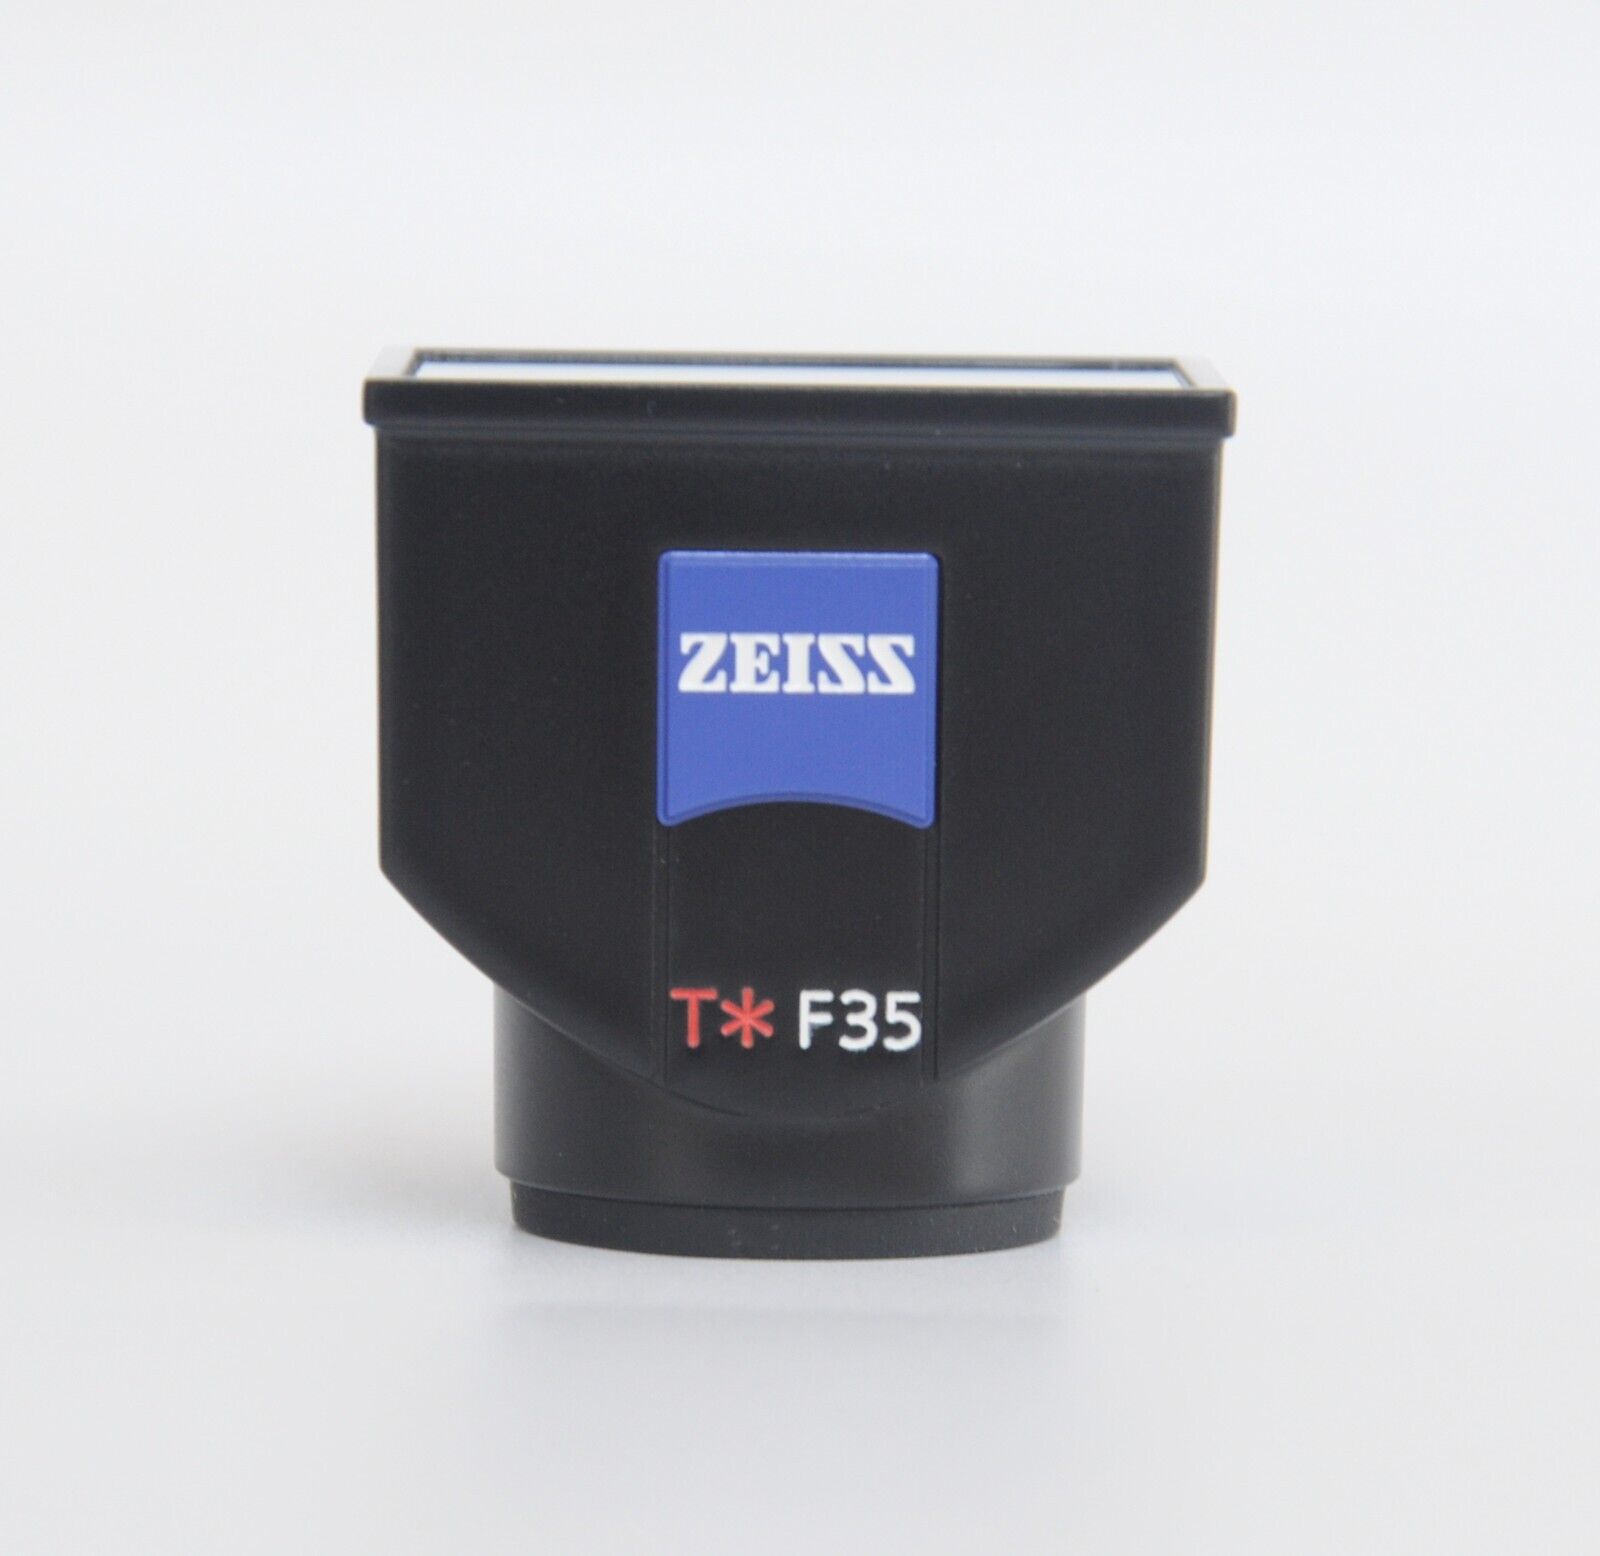 Sony FDA-V1K Optical Viewfinder Kit for DSC-RX1 Digital Cameras